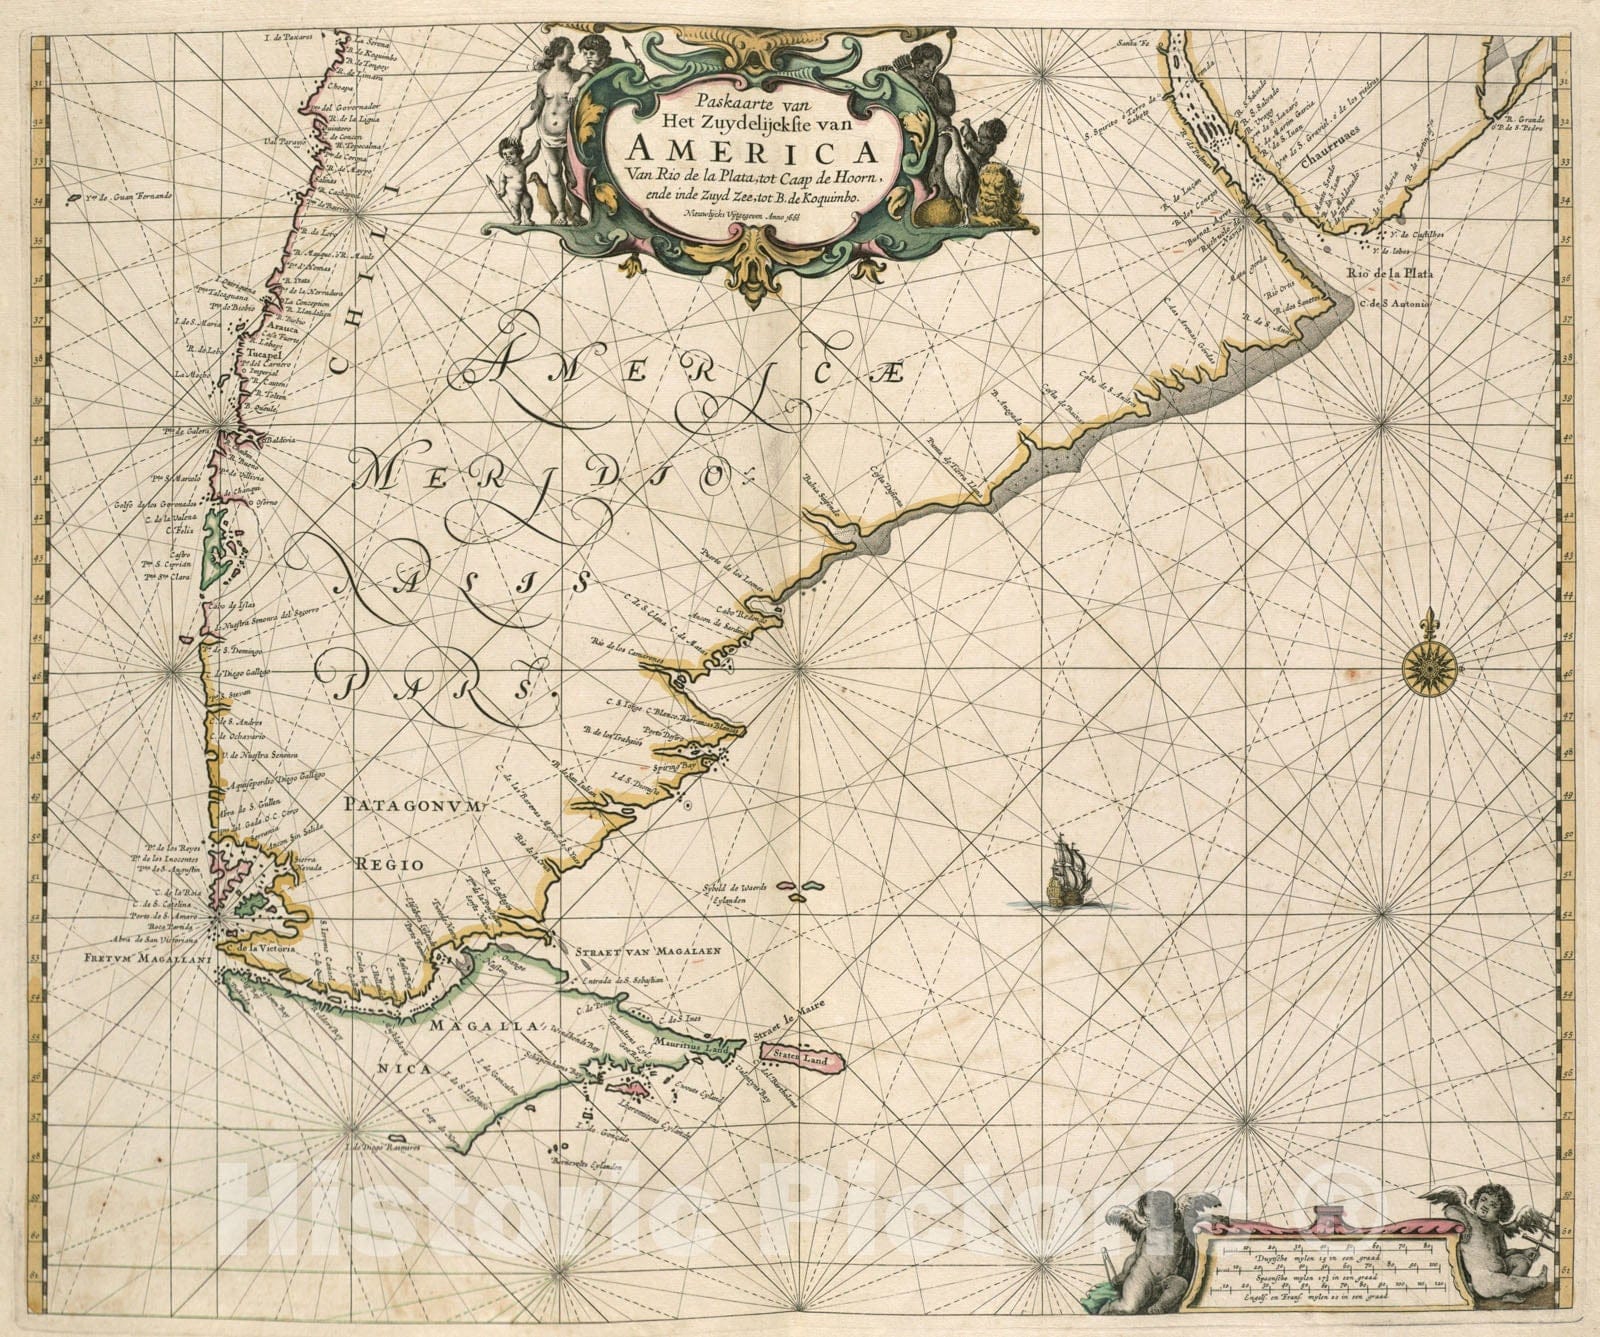 Historical Map, 1672 Paskaarte Van Het Zuydelijckste Van America Van Rio de la Plata, tot Caap de Hoorn, ende inde Zuyd Zee, tot B. de Koquimbo, Vintage Wall Art